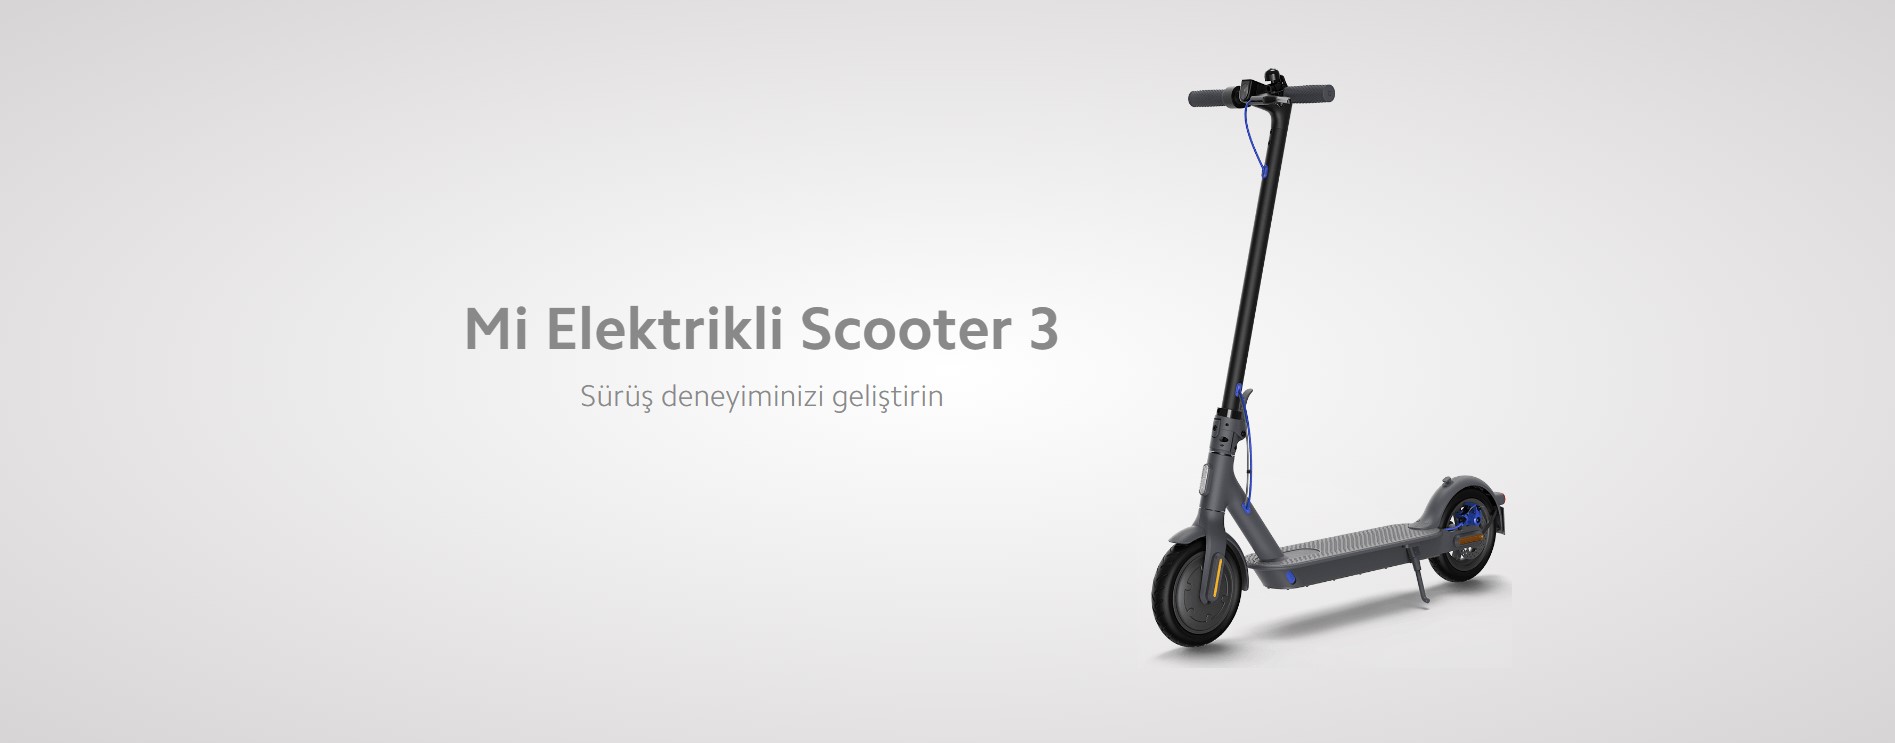 Xiaomi Mi Elektrikli Scooter 3